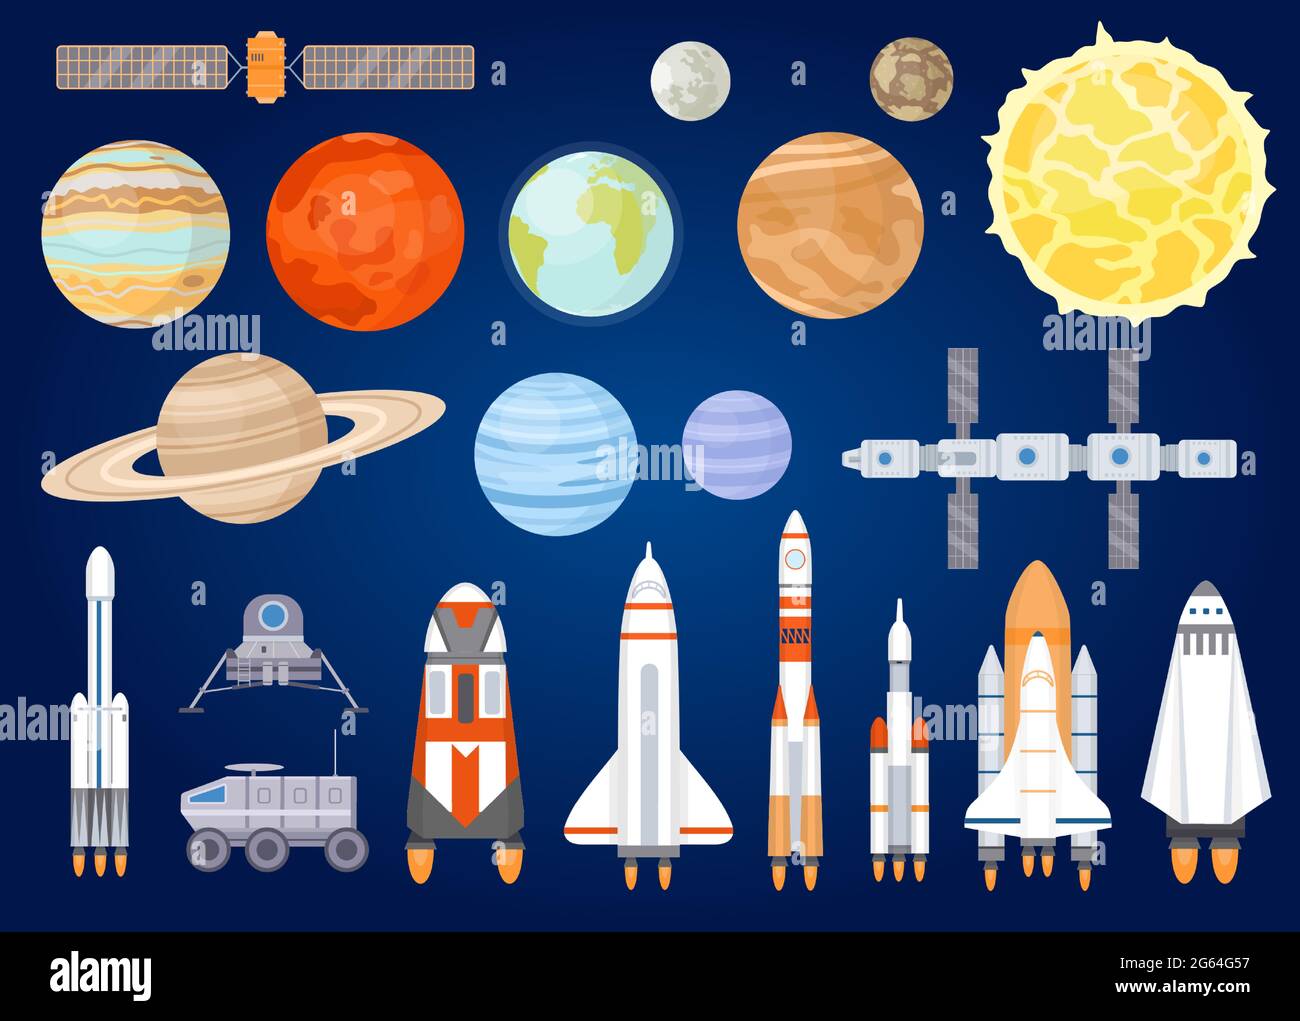 Raumelemente. Sonnensystem Planeten, Sonne, Raumschiff, Rakete, Satelliten, mars- und Mondrover. Universum erkunden. Cartoon kosmischen Vektor-Set Stock Vektor